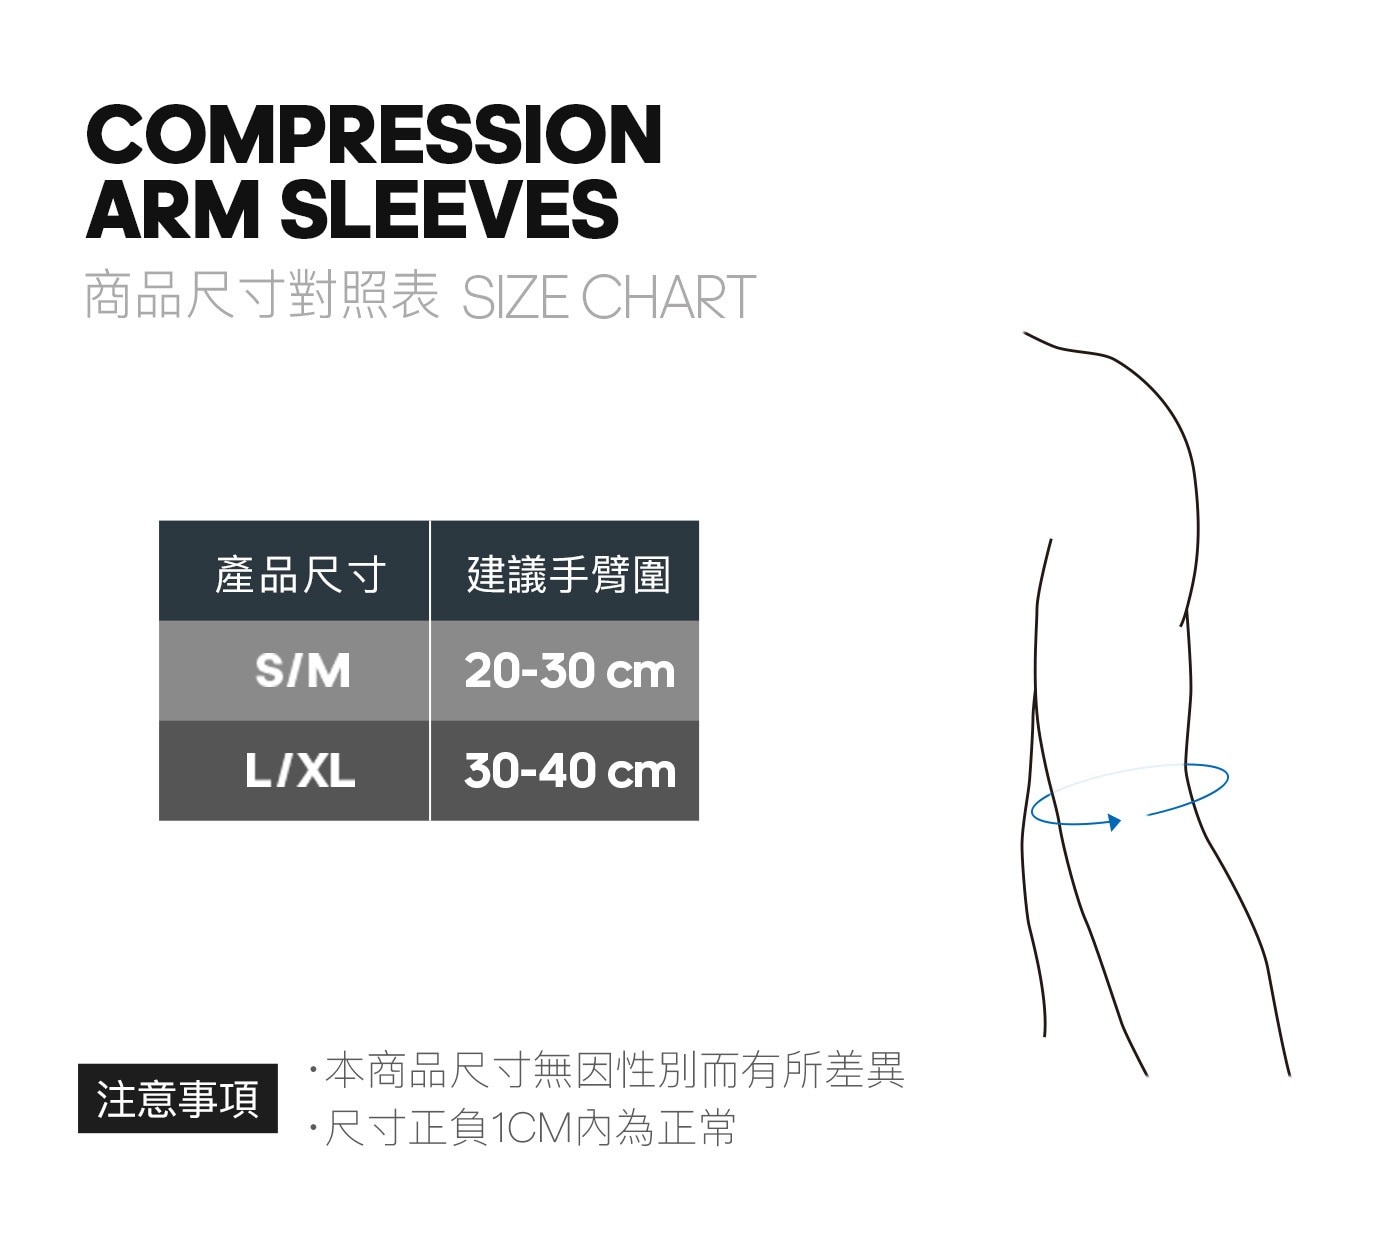 Adidas 機能壓縮袖套彈性纖維虛線矽膠鑲嵌物刺激血液循環調節溫度